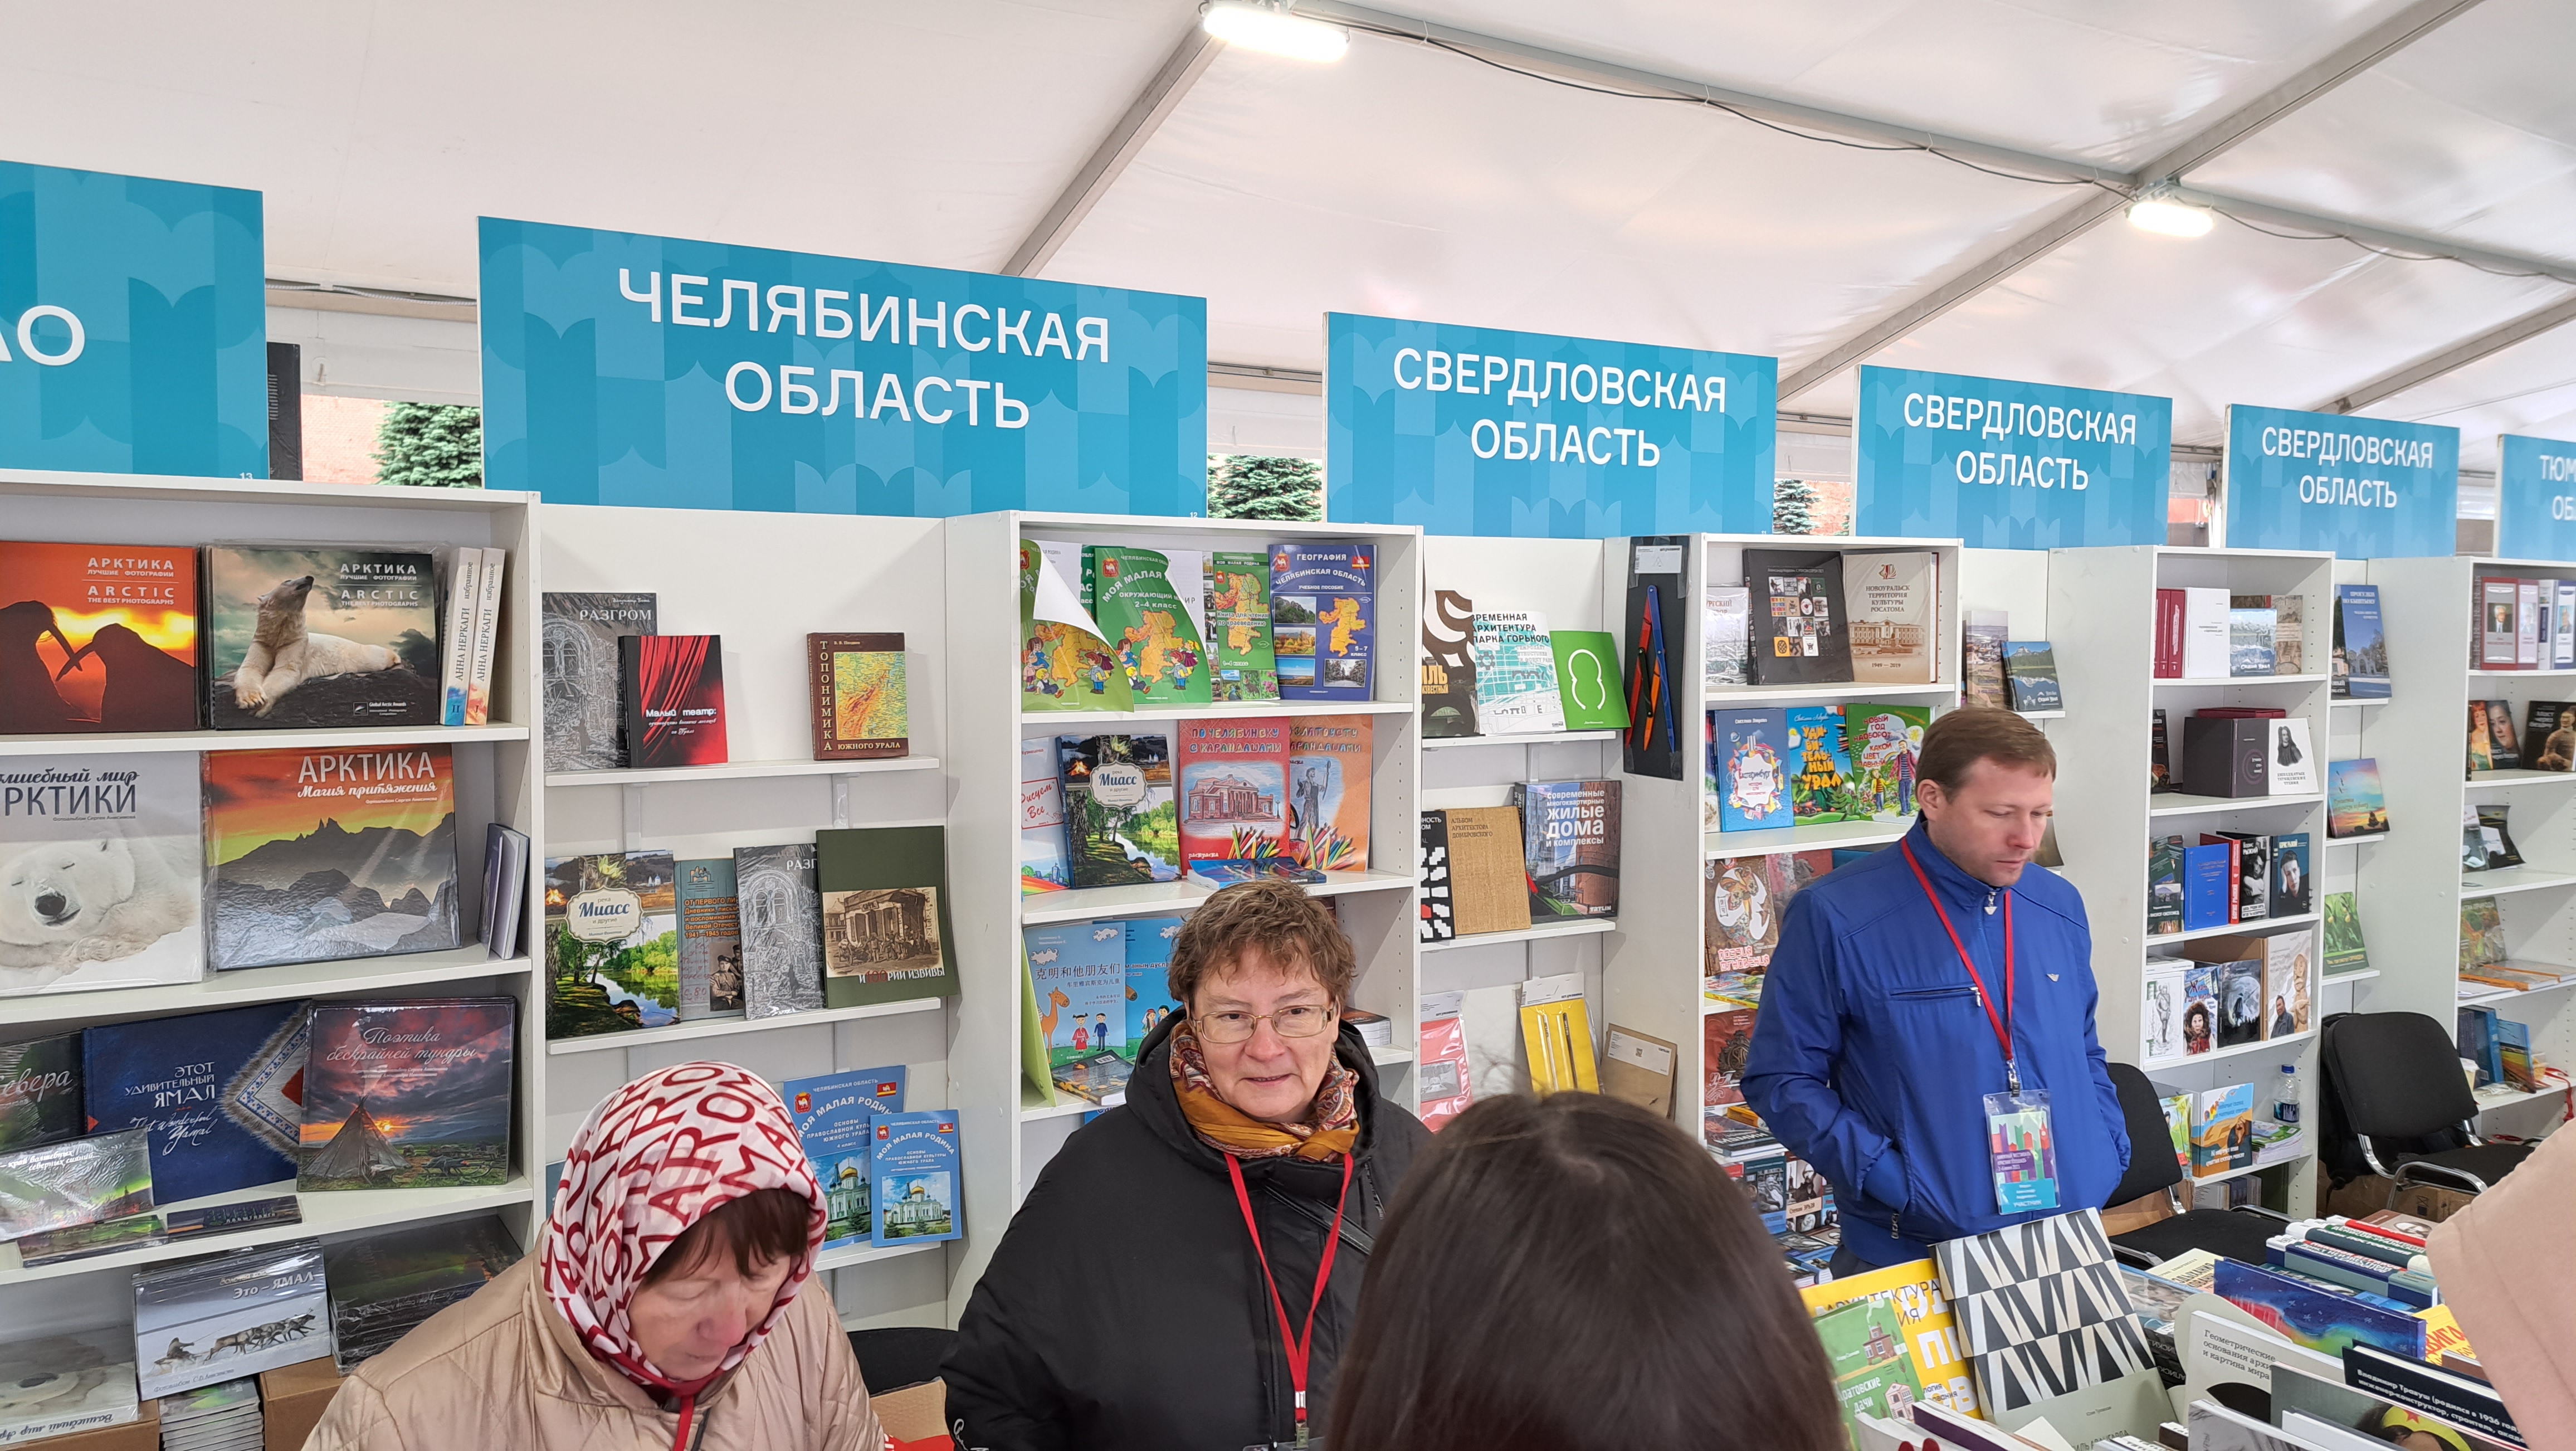 Челябинская область на книжной ярмарке "Красная площадь"